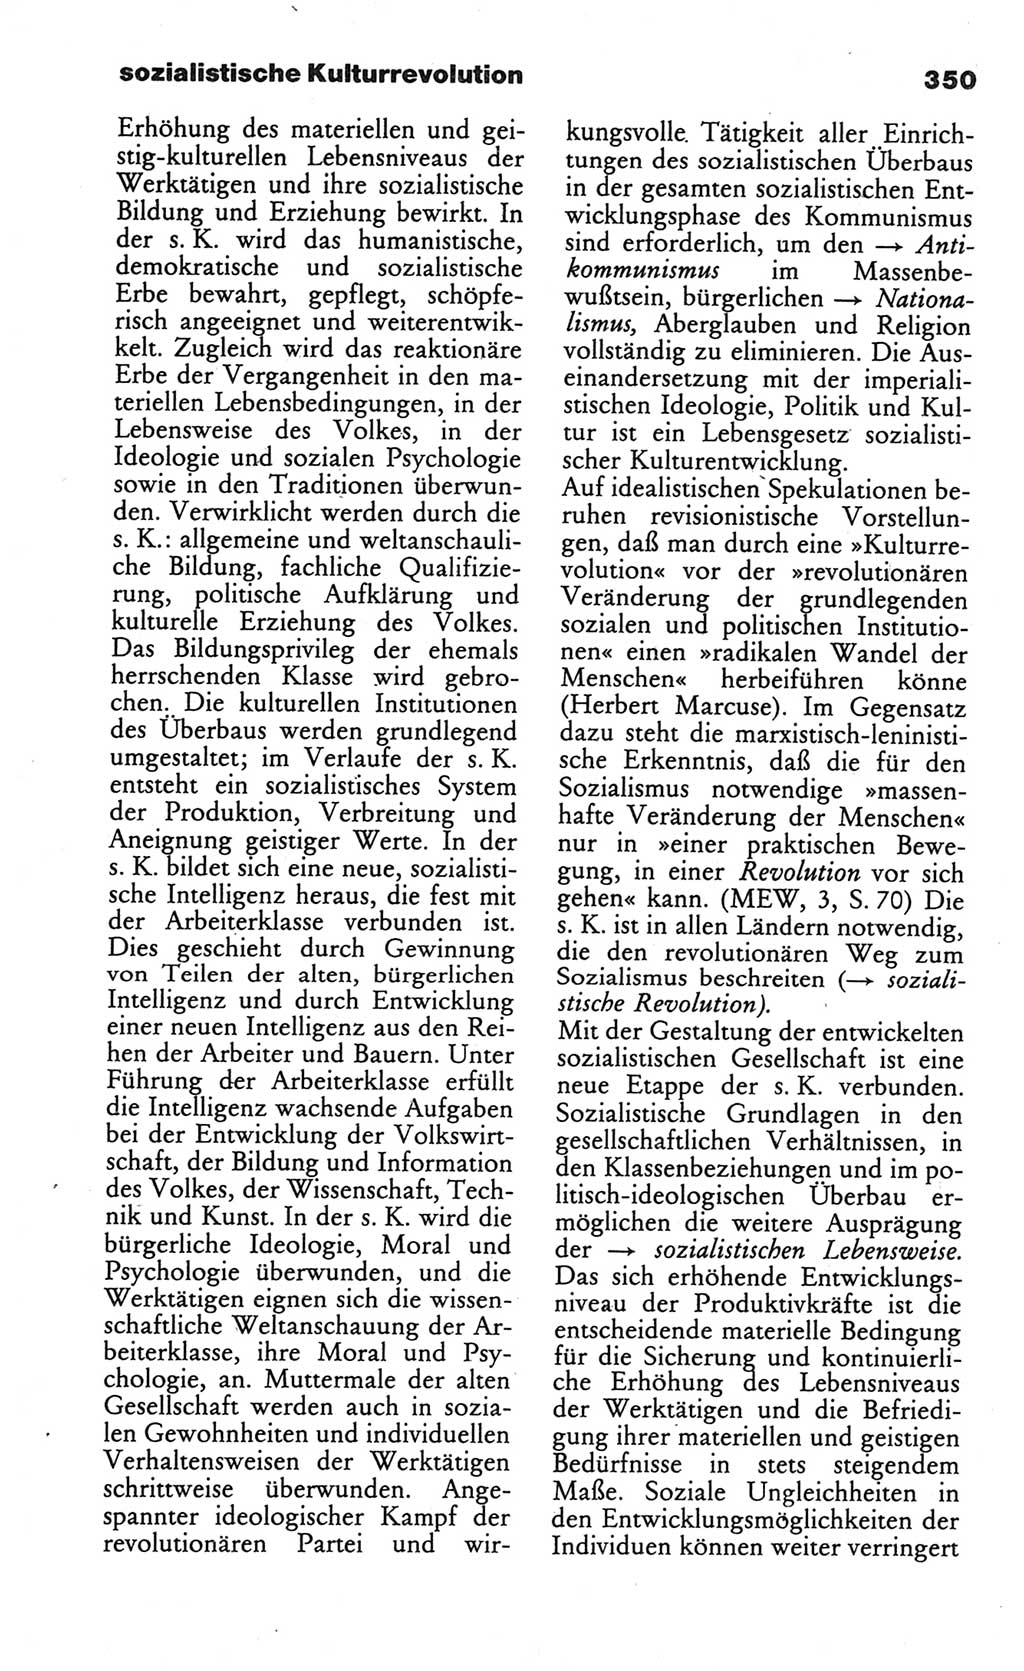 Wörterbuch des wissenschaftlichen Kommunismus [Deutsche Demokratische Republik (DDR)] 1984, Seite 350 (Wb. wiss. Komm. DDR 1984, S. 350)